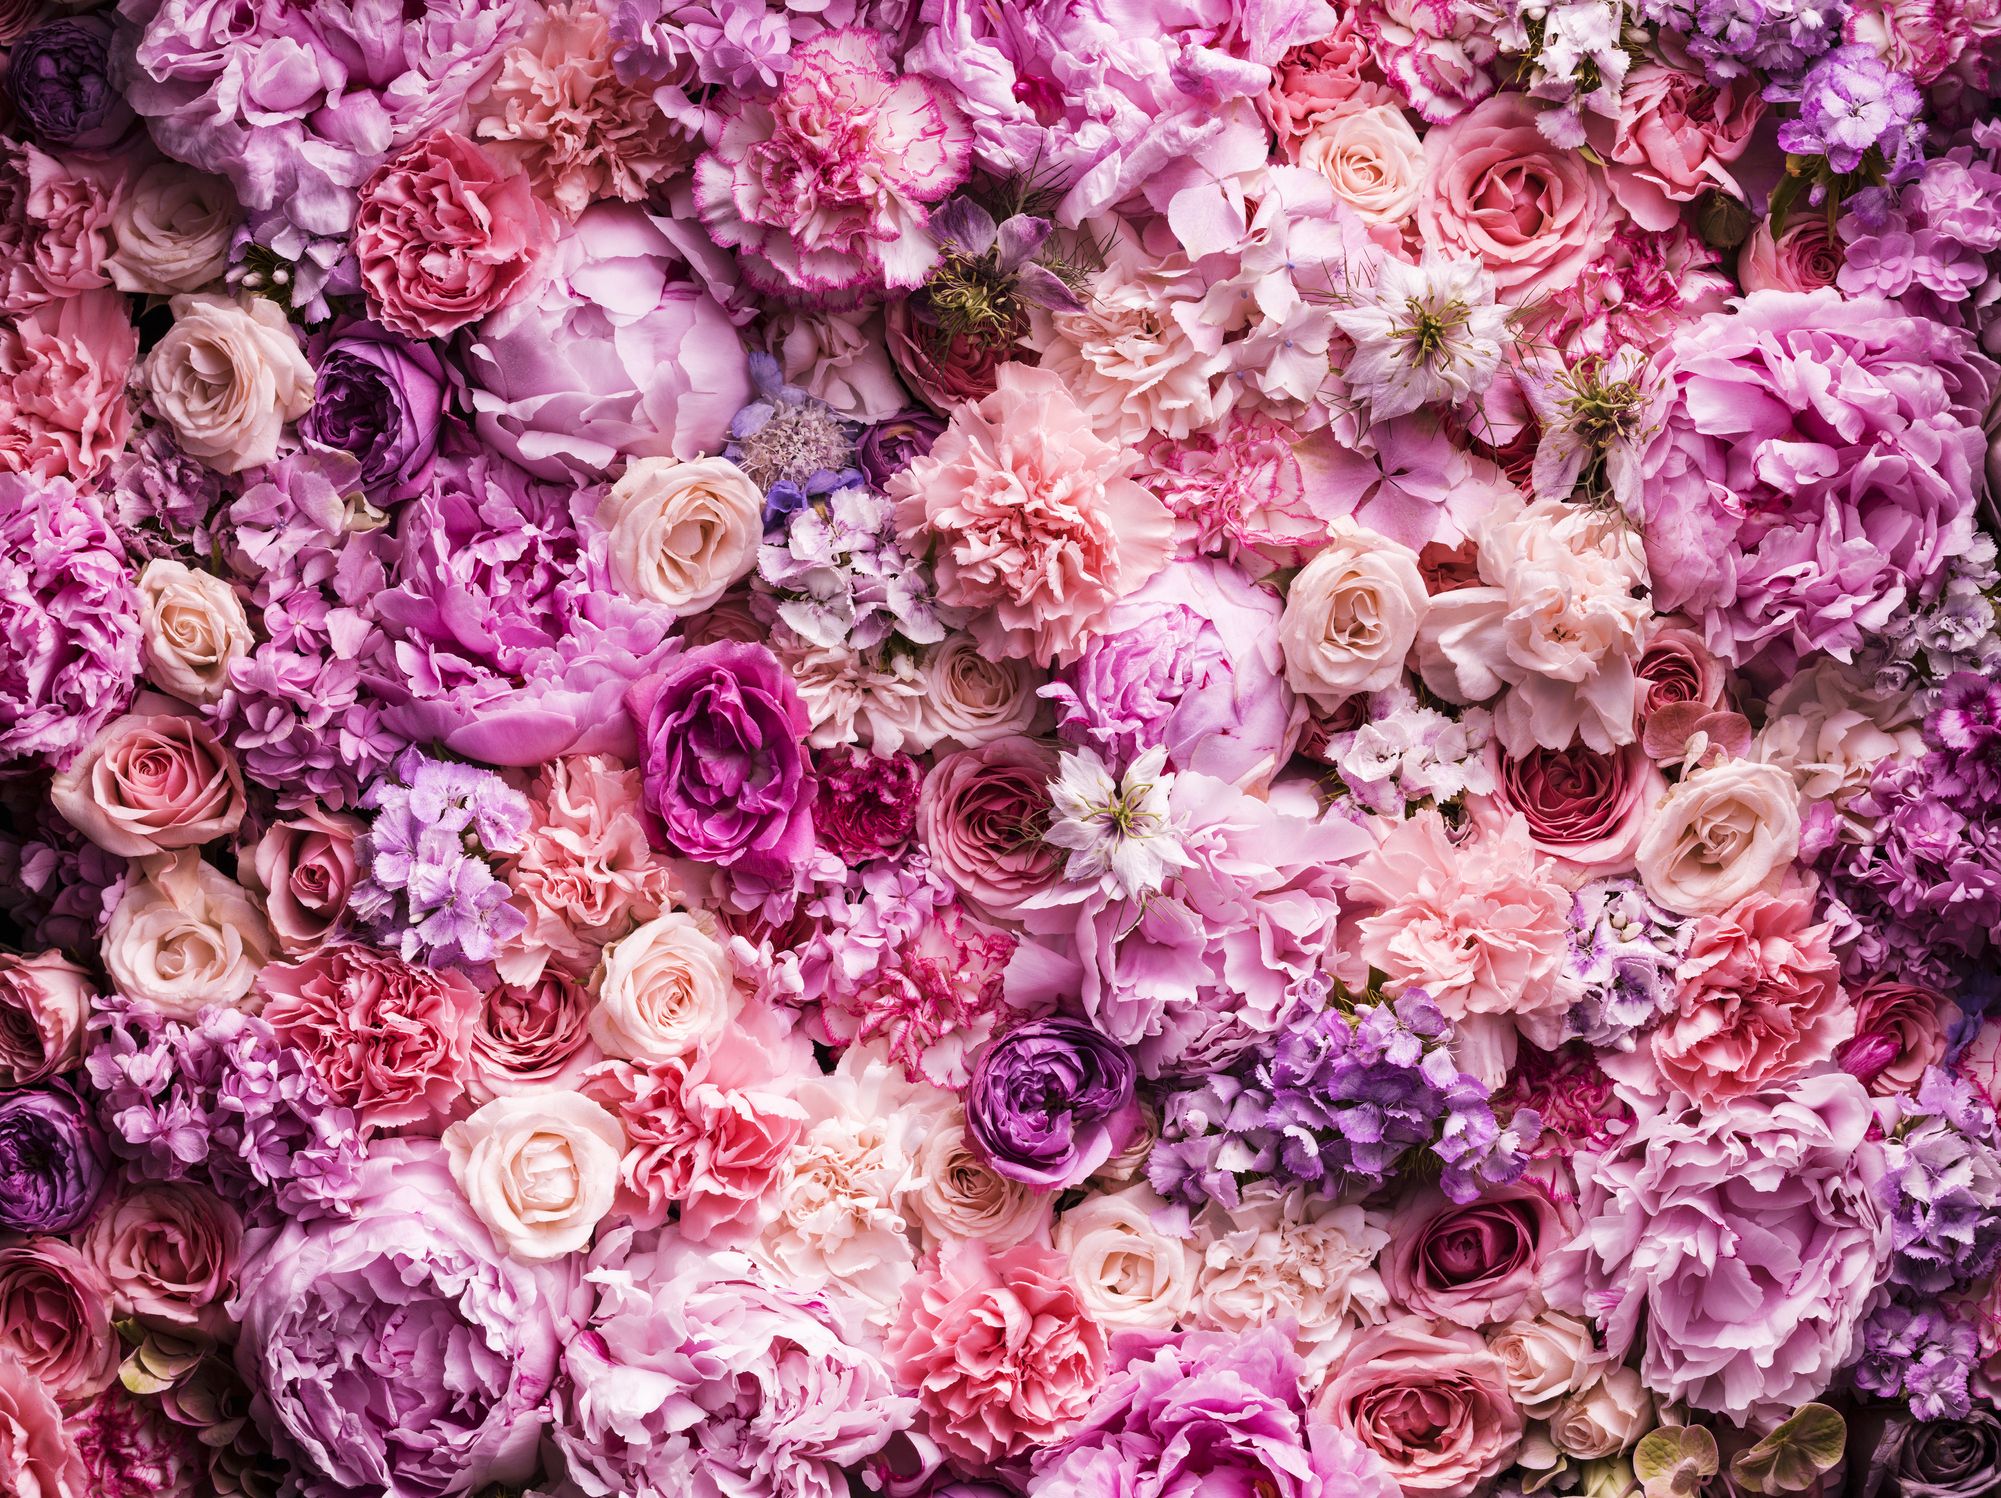 Descubre las flores más buscadas, raras y caras del mundo